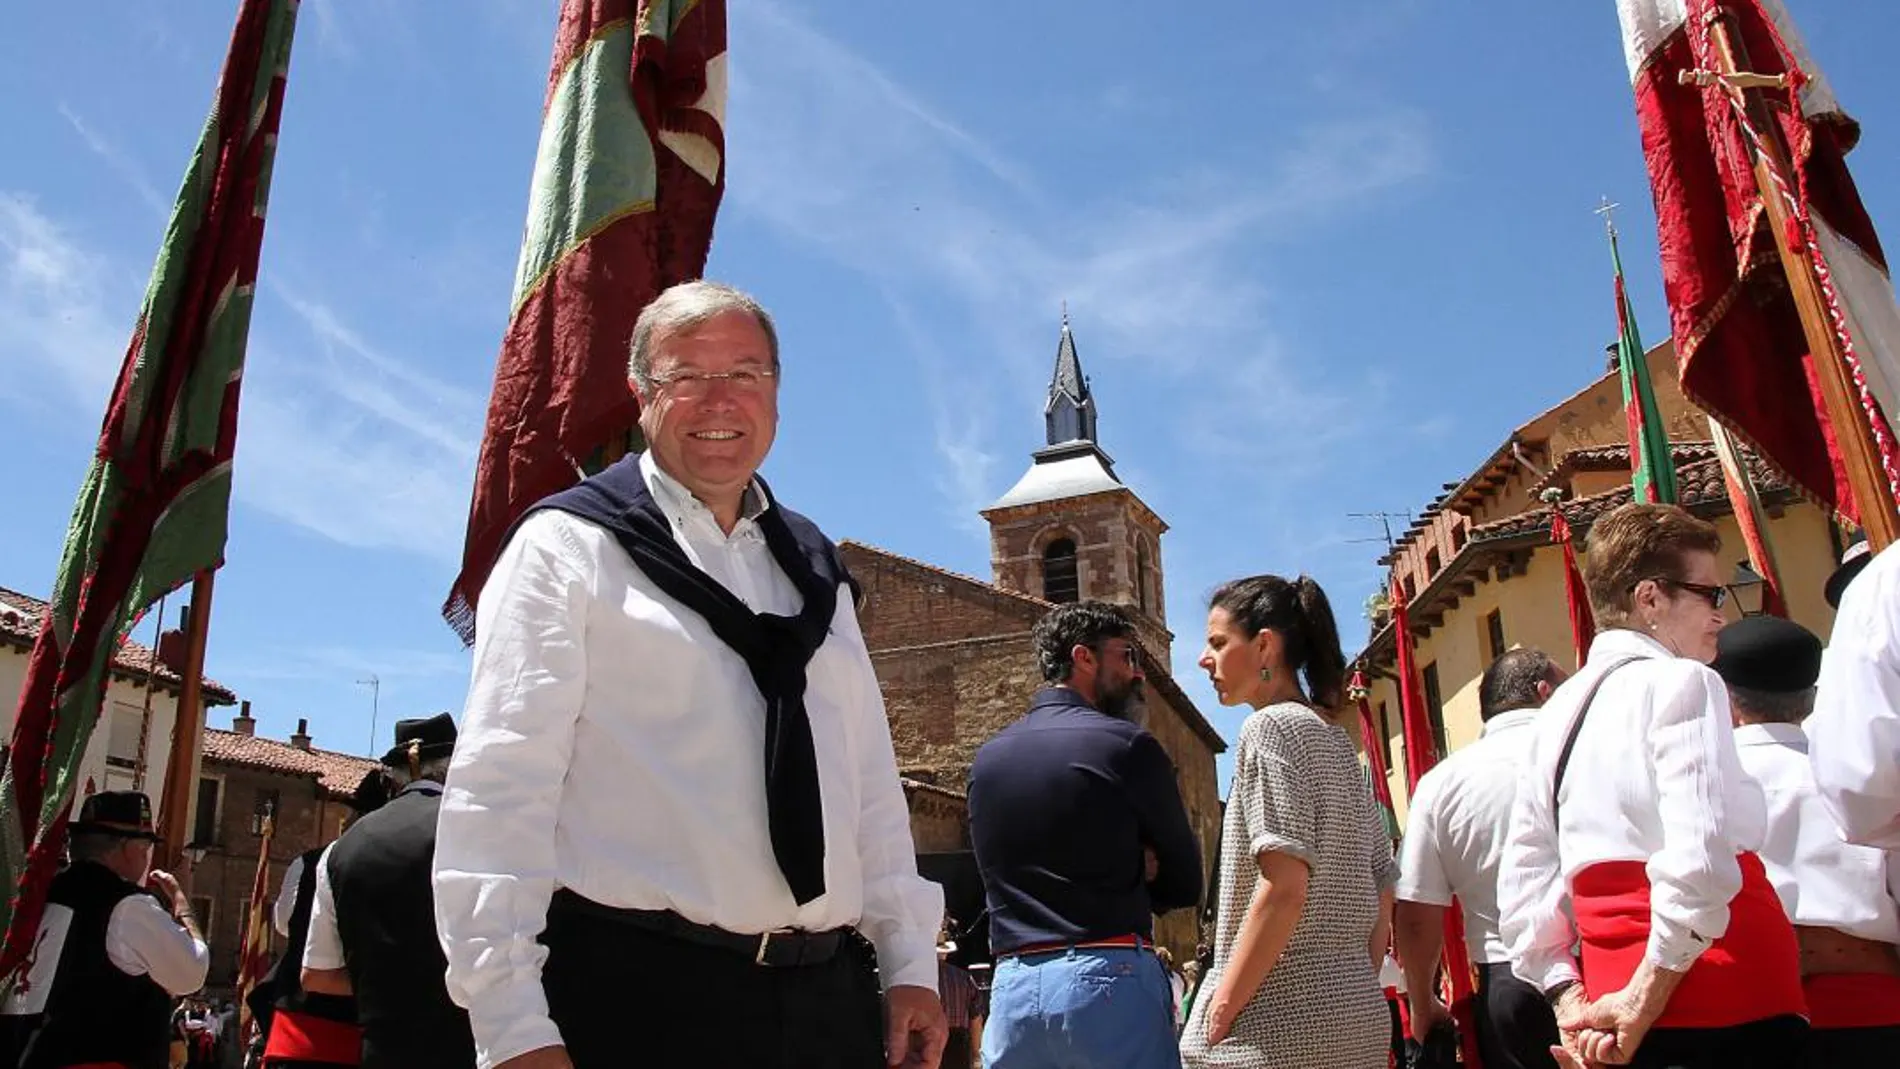 El alcalde de León, Antonio Silván, participa en los actos para celebrar el estreno de la Plaza del Grano